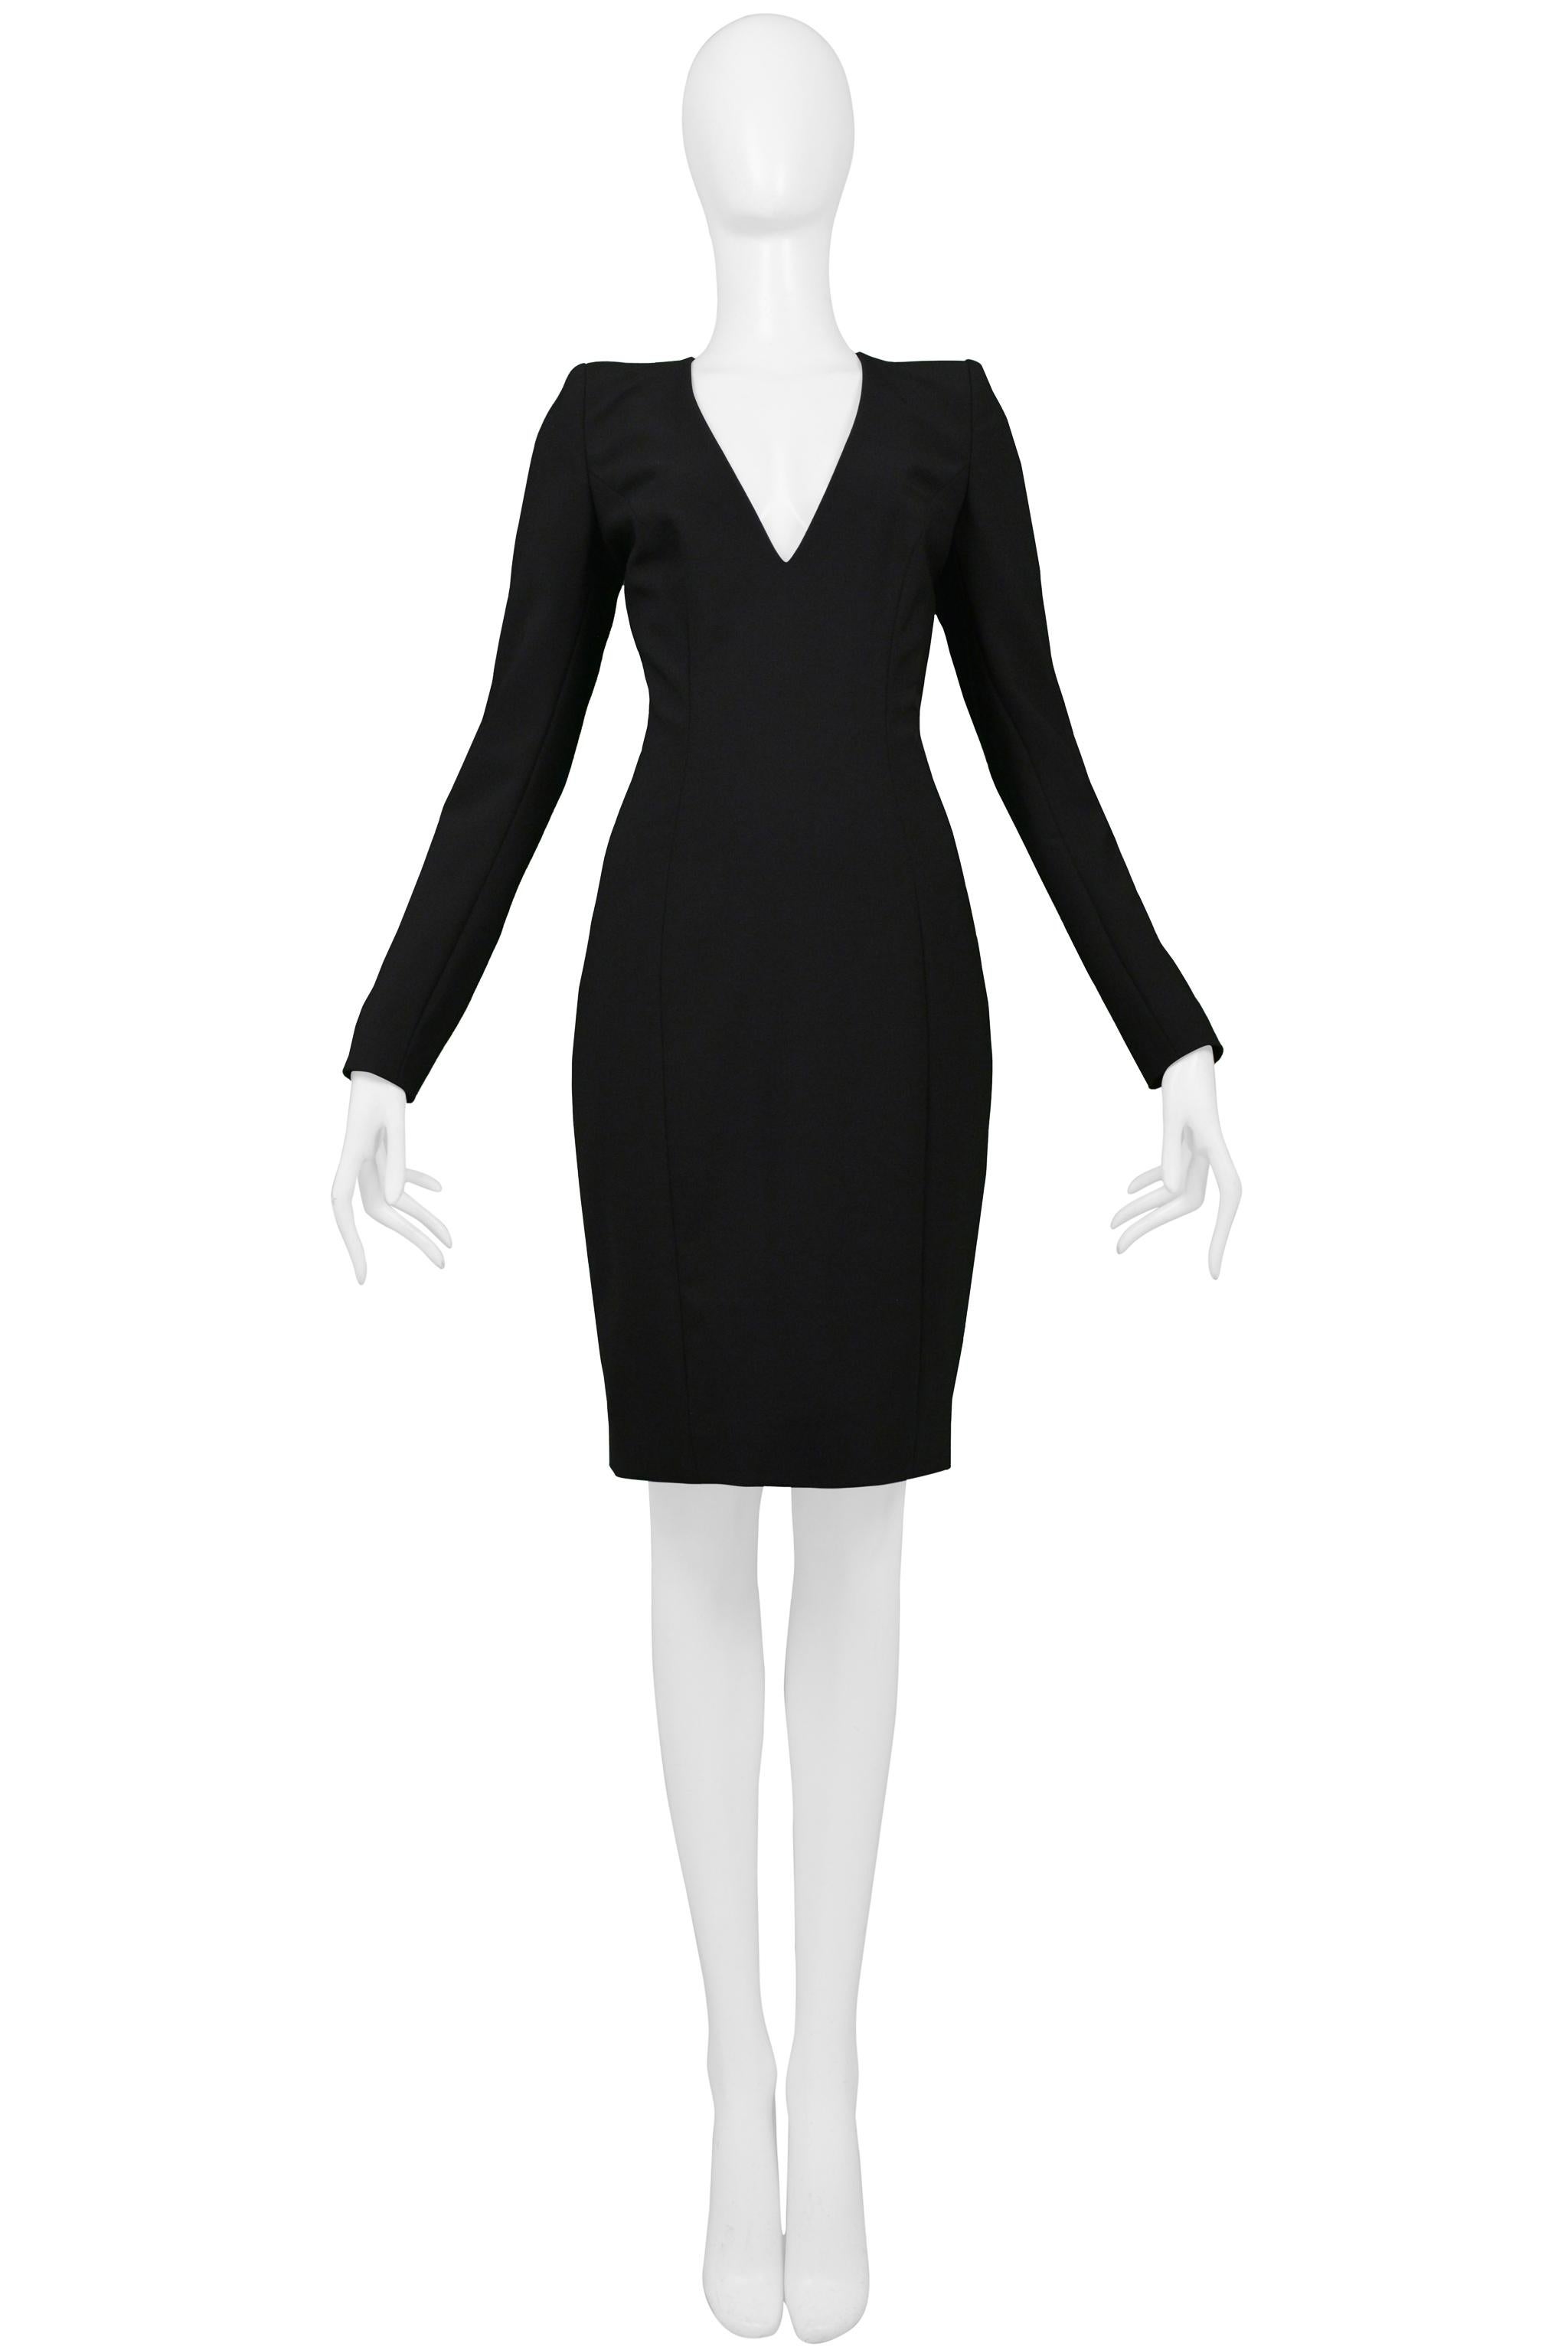 Resurrection a le plaisir de vous proposer une superbe robe de cocktail veuve noire John Galliano vintage, avec un profond décolleté en V, des manches longues avec boutons recouverts, des épaulettes, des coutures incurvées et un corps ajusté. De la